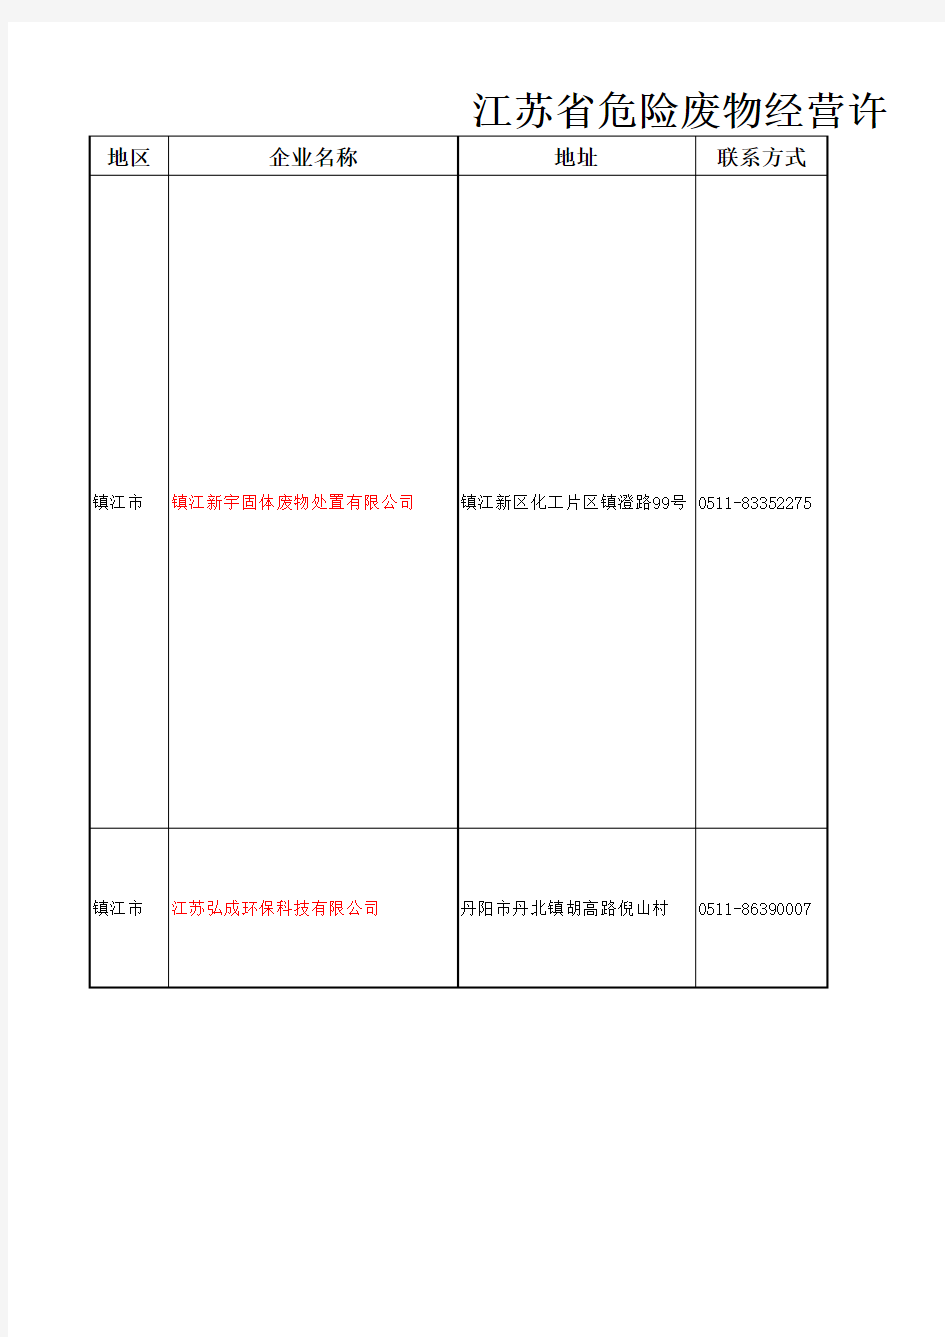 江苏省危险废物经营许可证颁发情况表(截止2017年5月).xls